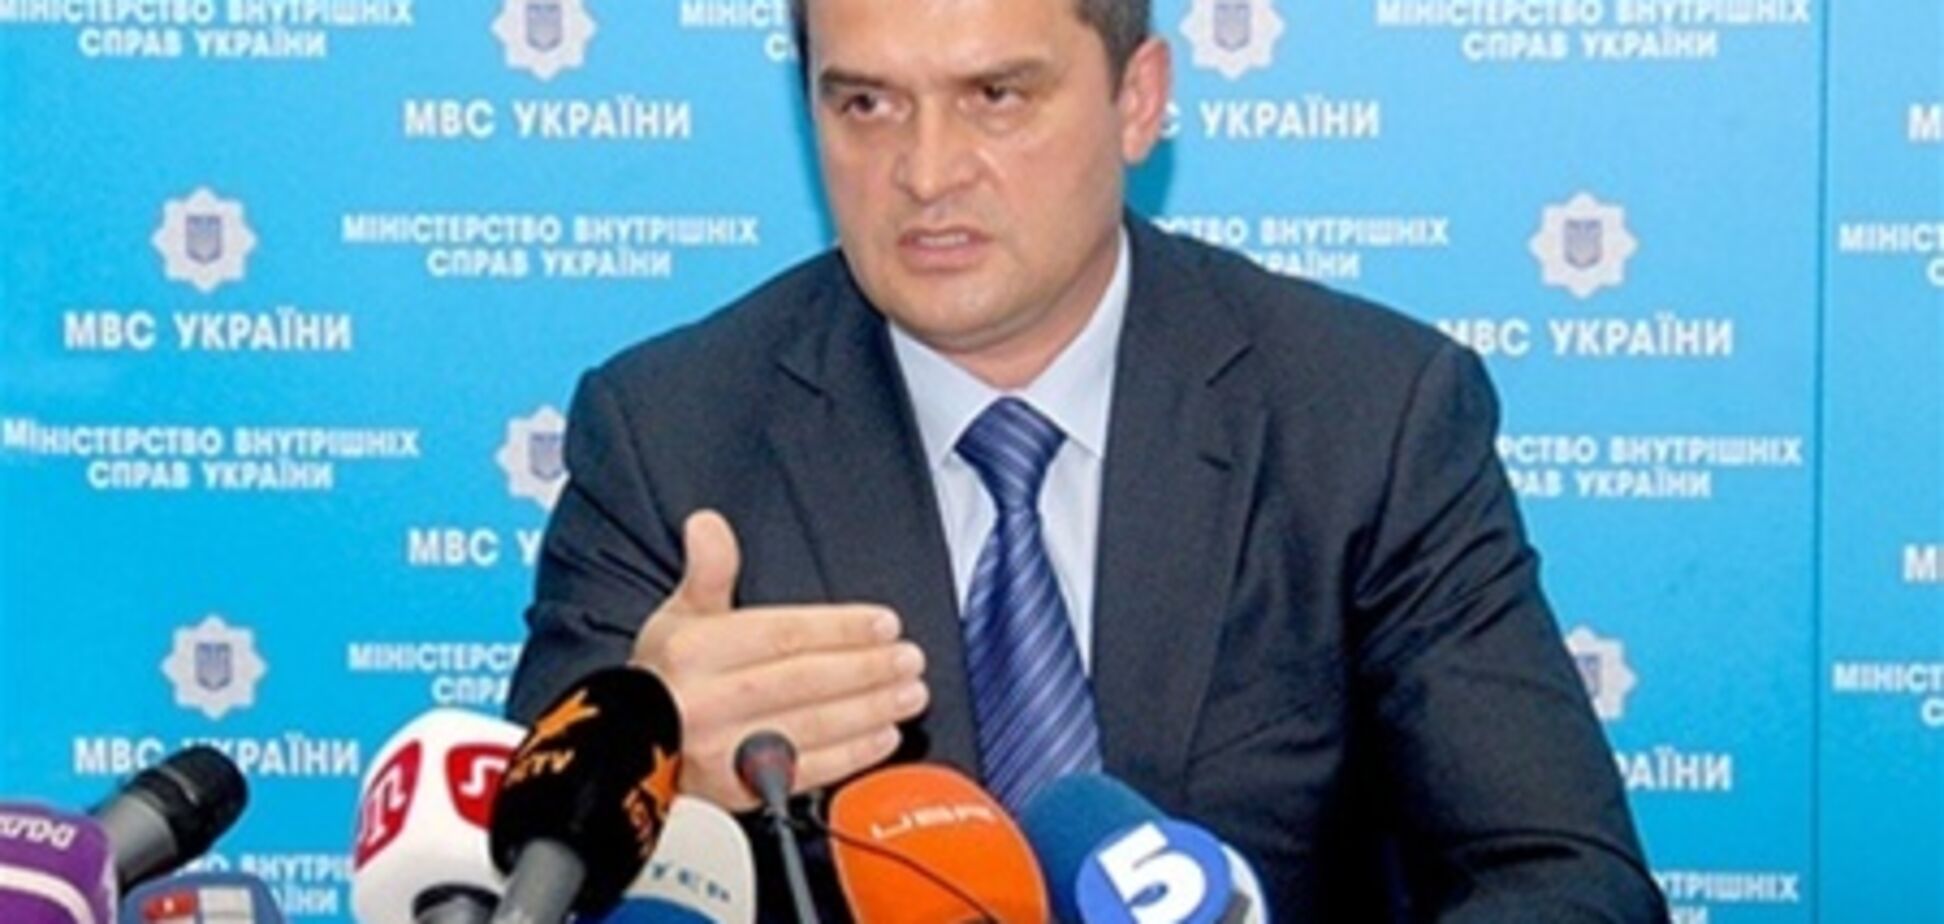 Захарченко пообещал наказывать подстрекателей на штурмы РОВД